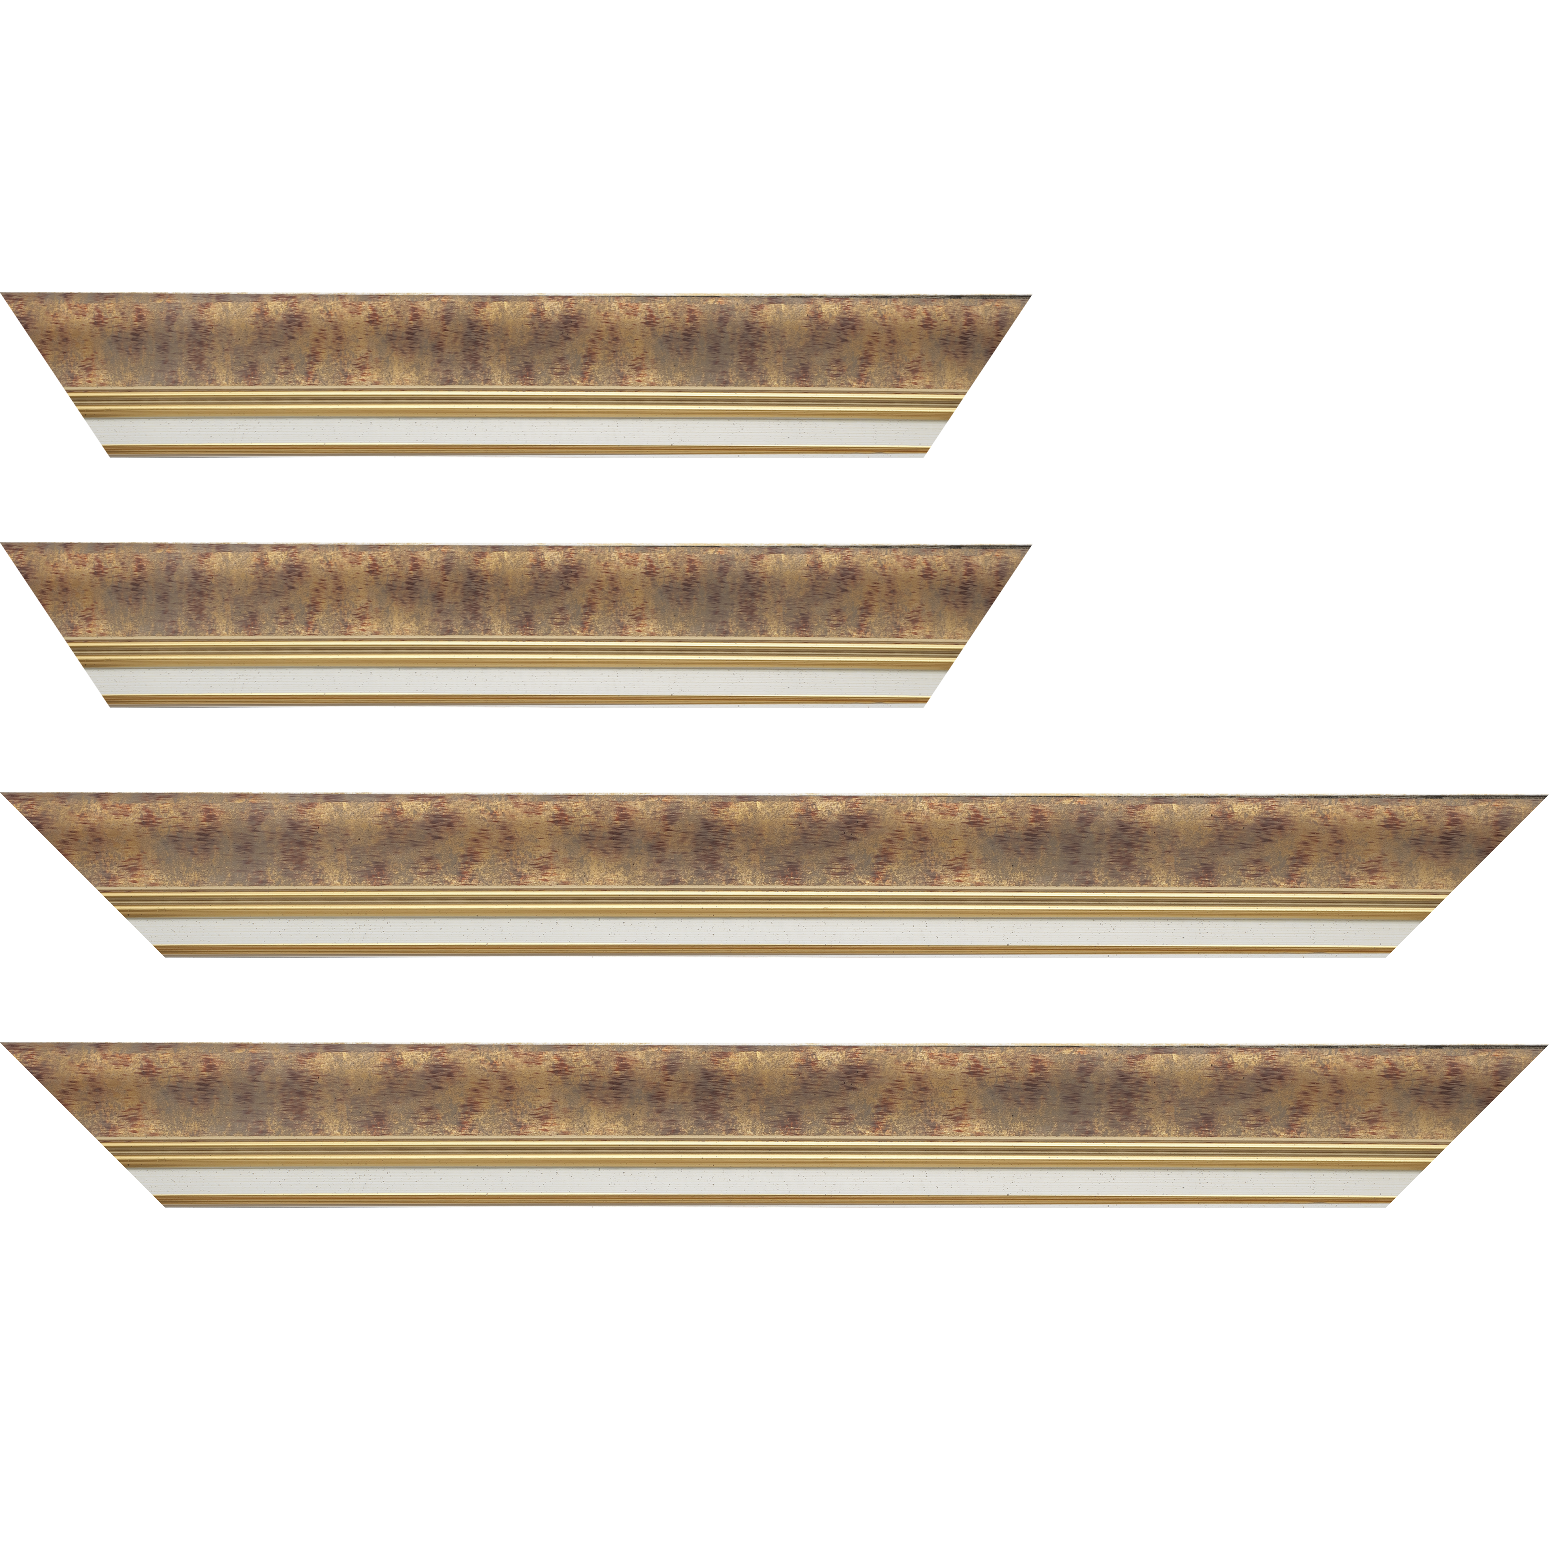 Baguette bois profil incurvé largeur 5.7cm de couleur bordeaux patiné fond or marie louise blanche mouchetée filet or intégré - 59.4x84.1